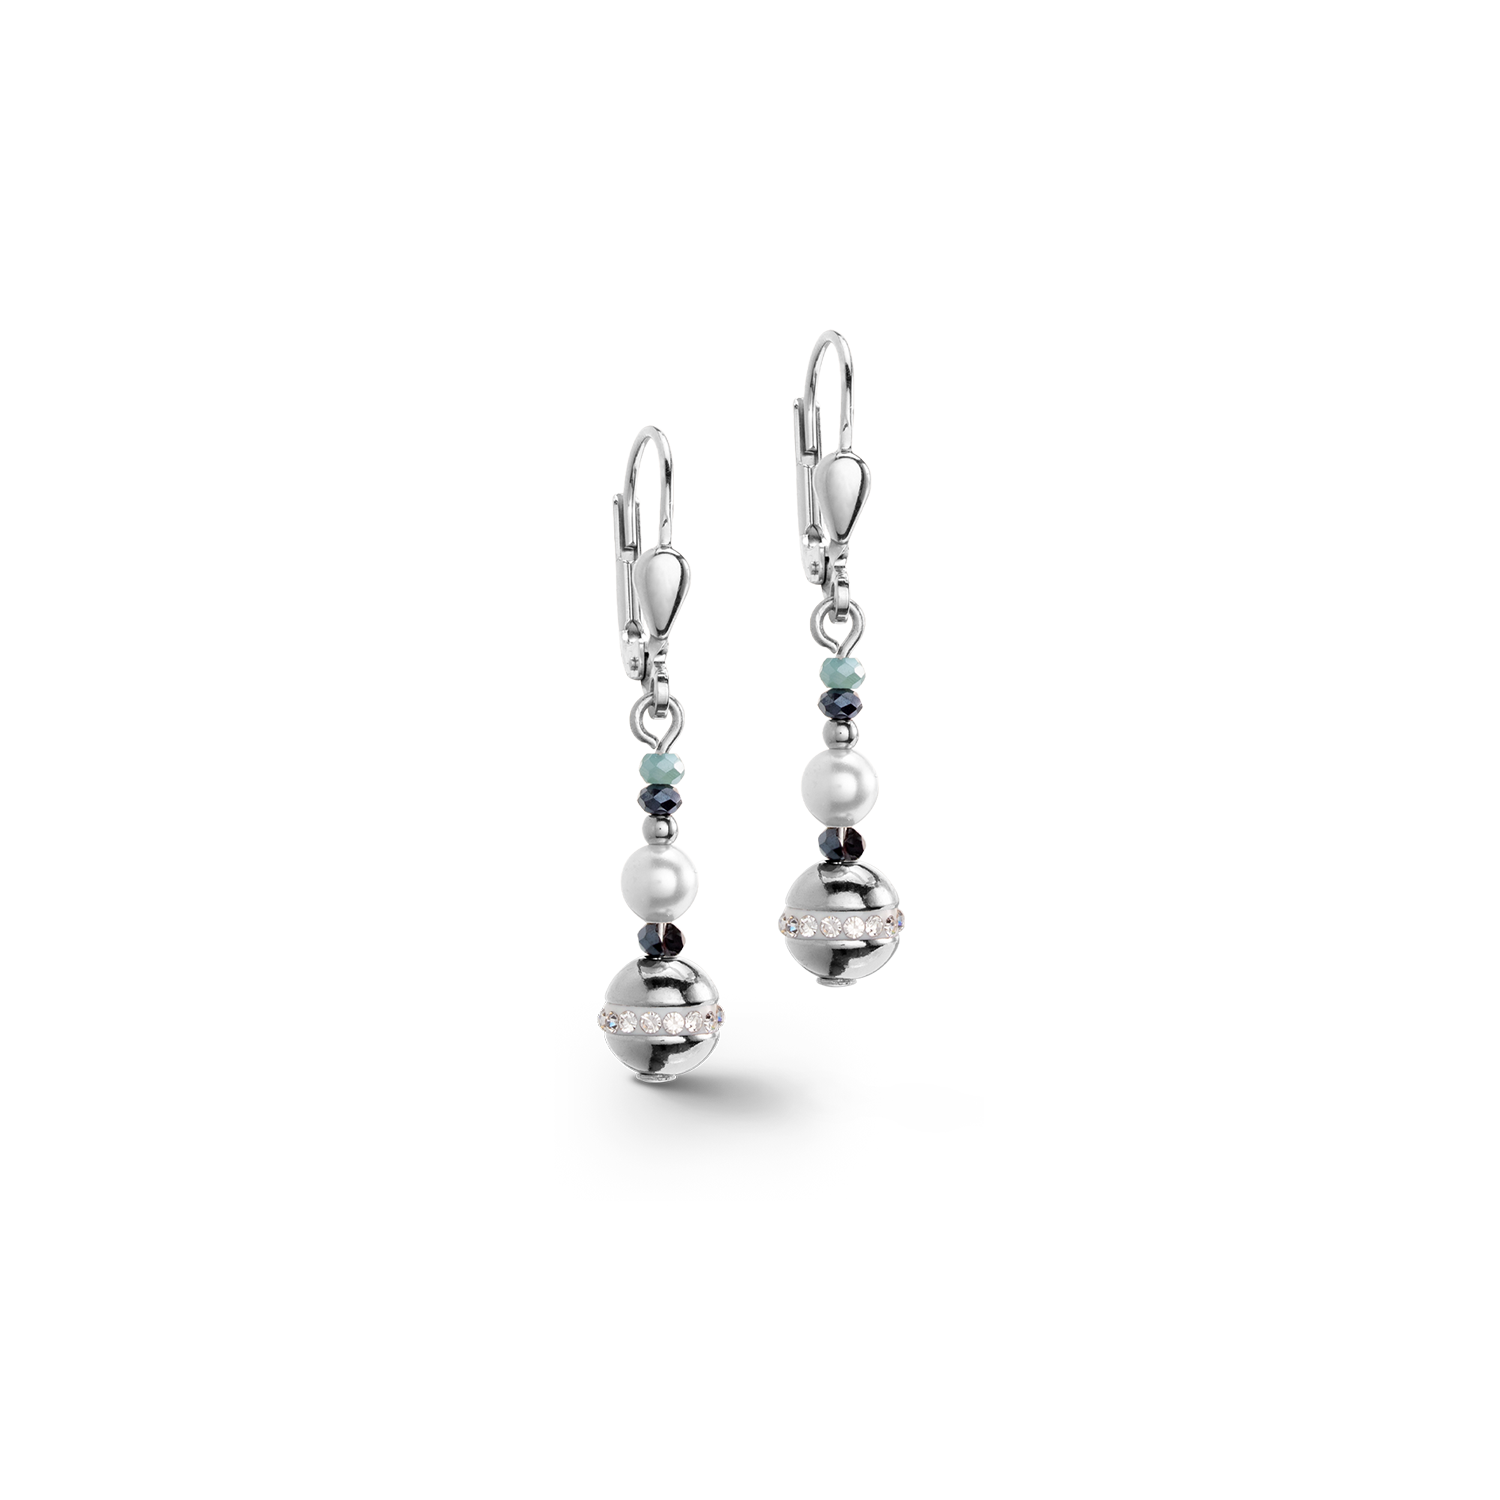 Boucles d'oreilles Boule small de pierres précieuses & Crystal Pearls aqua-argent